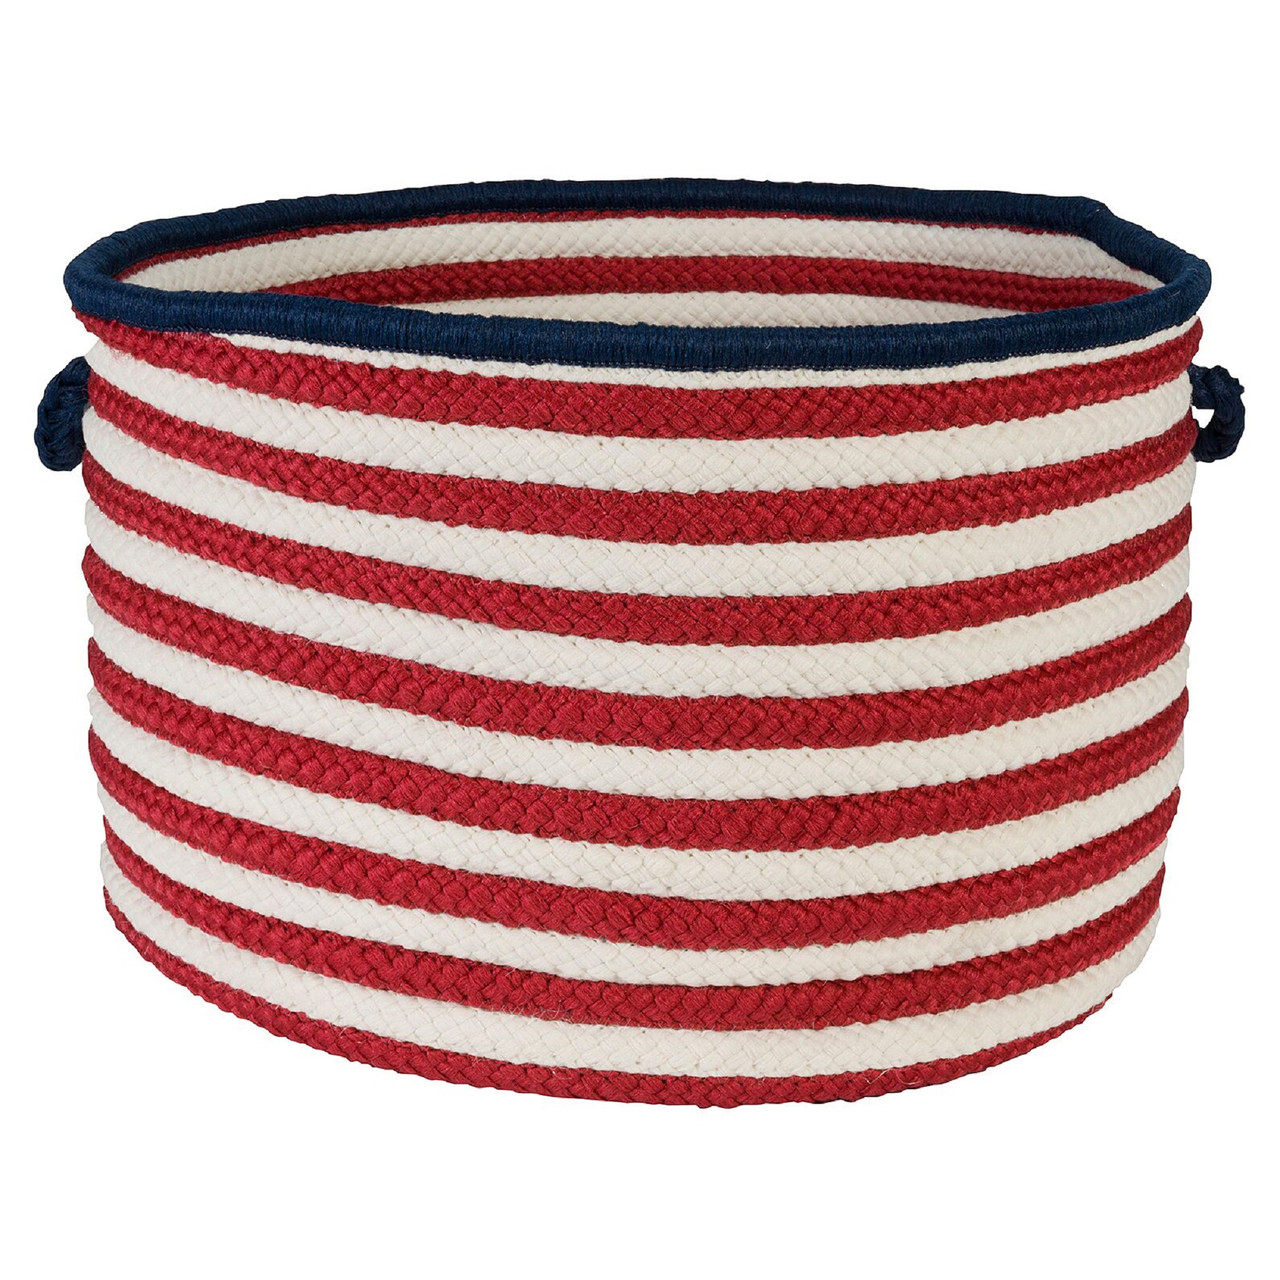 Patriotic Pride braided basket